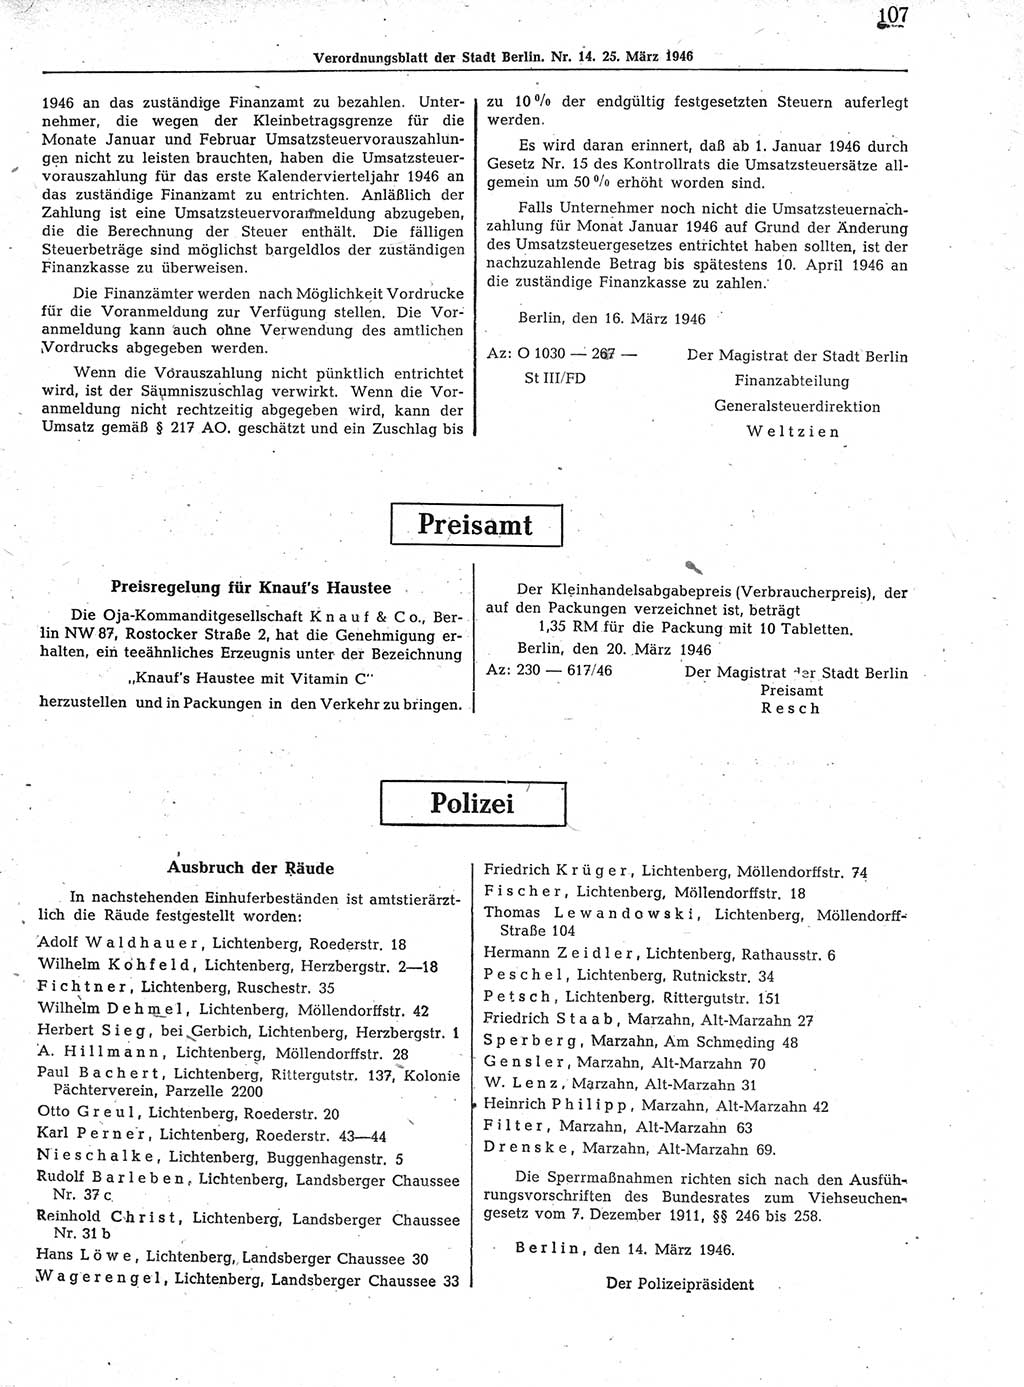 Verordnungsblatt (VOBl.) der Stadt Berlin, für Groß-Berlin 1946, Seite 107 (VOBl. Bln. 1946, S. 107)